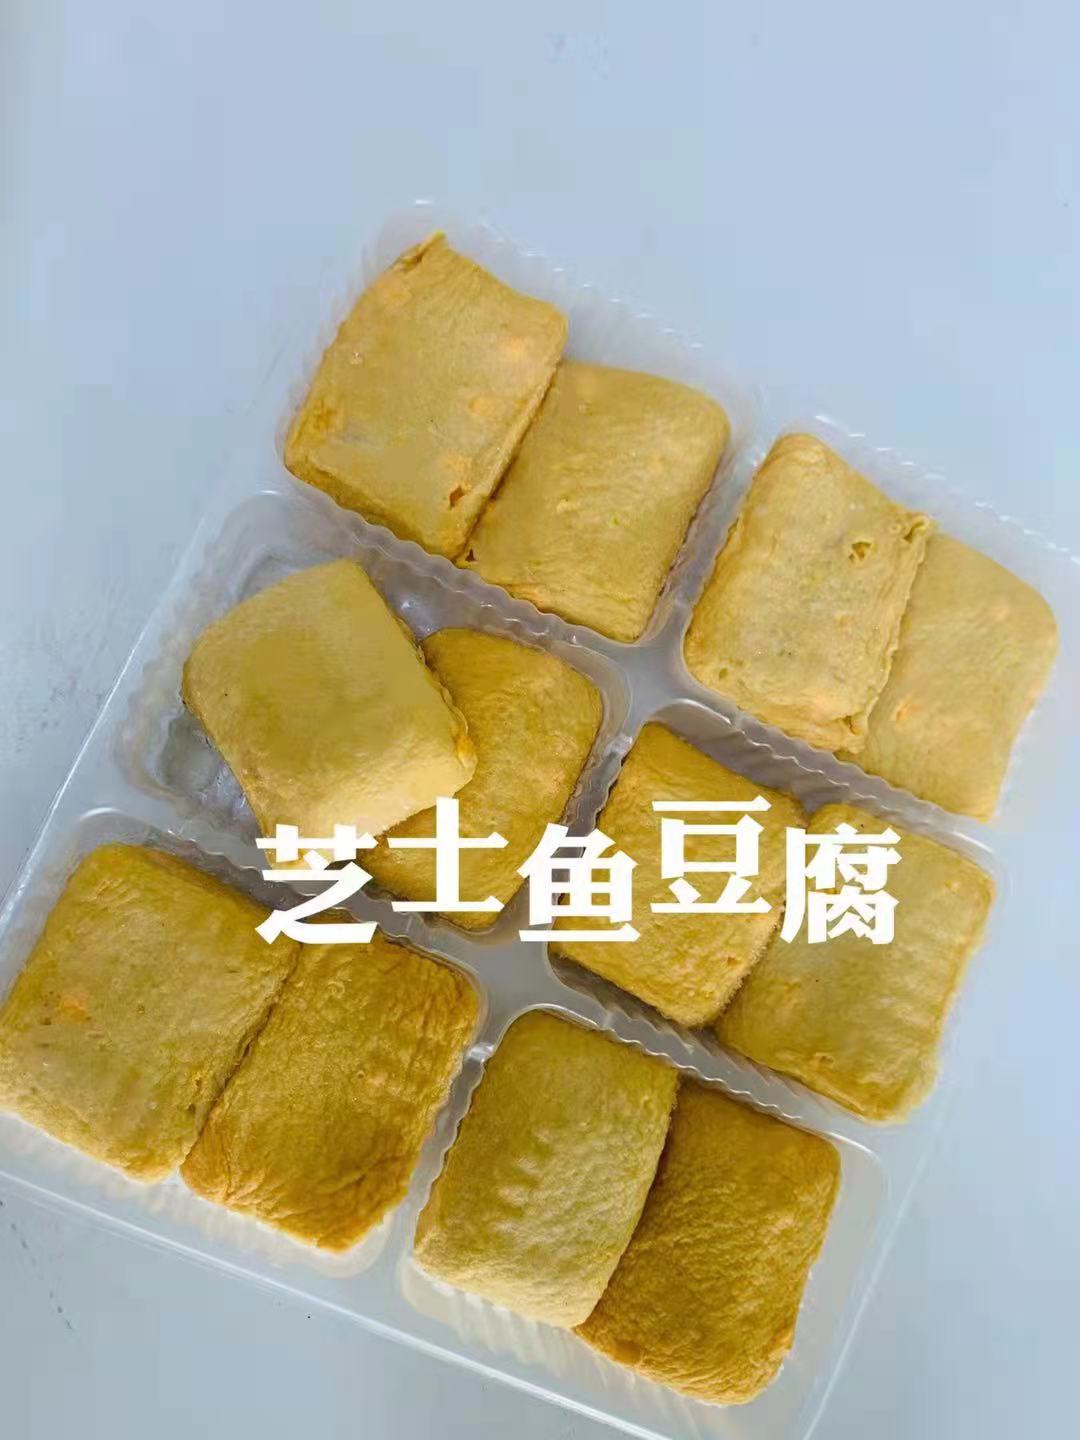 富媽媽 芝士魚豆腐 250g 冷凍品